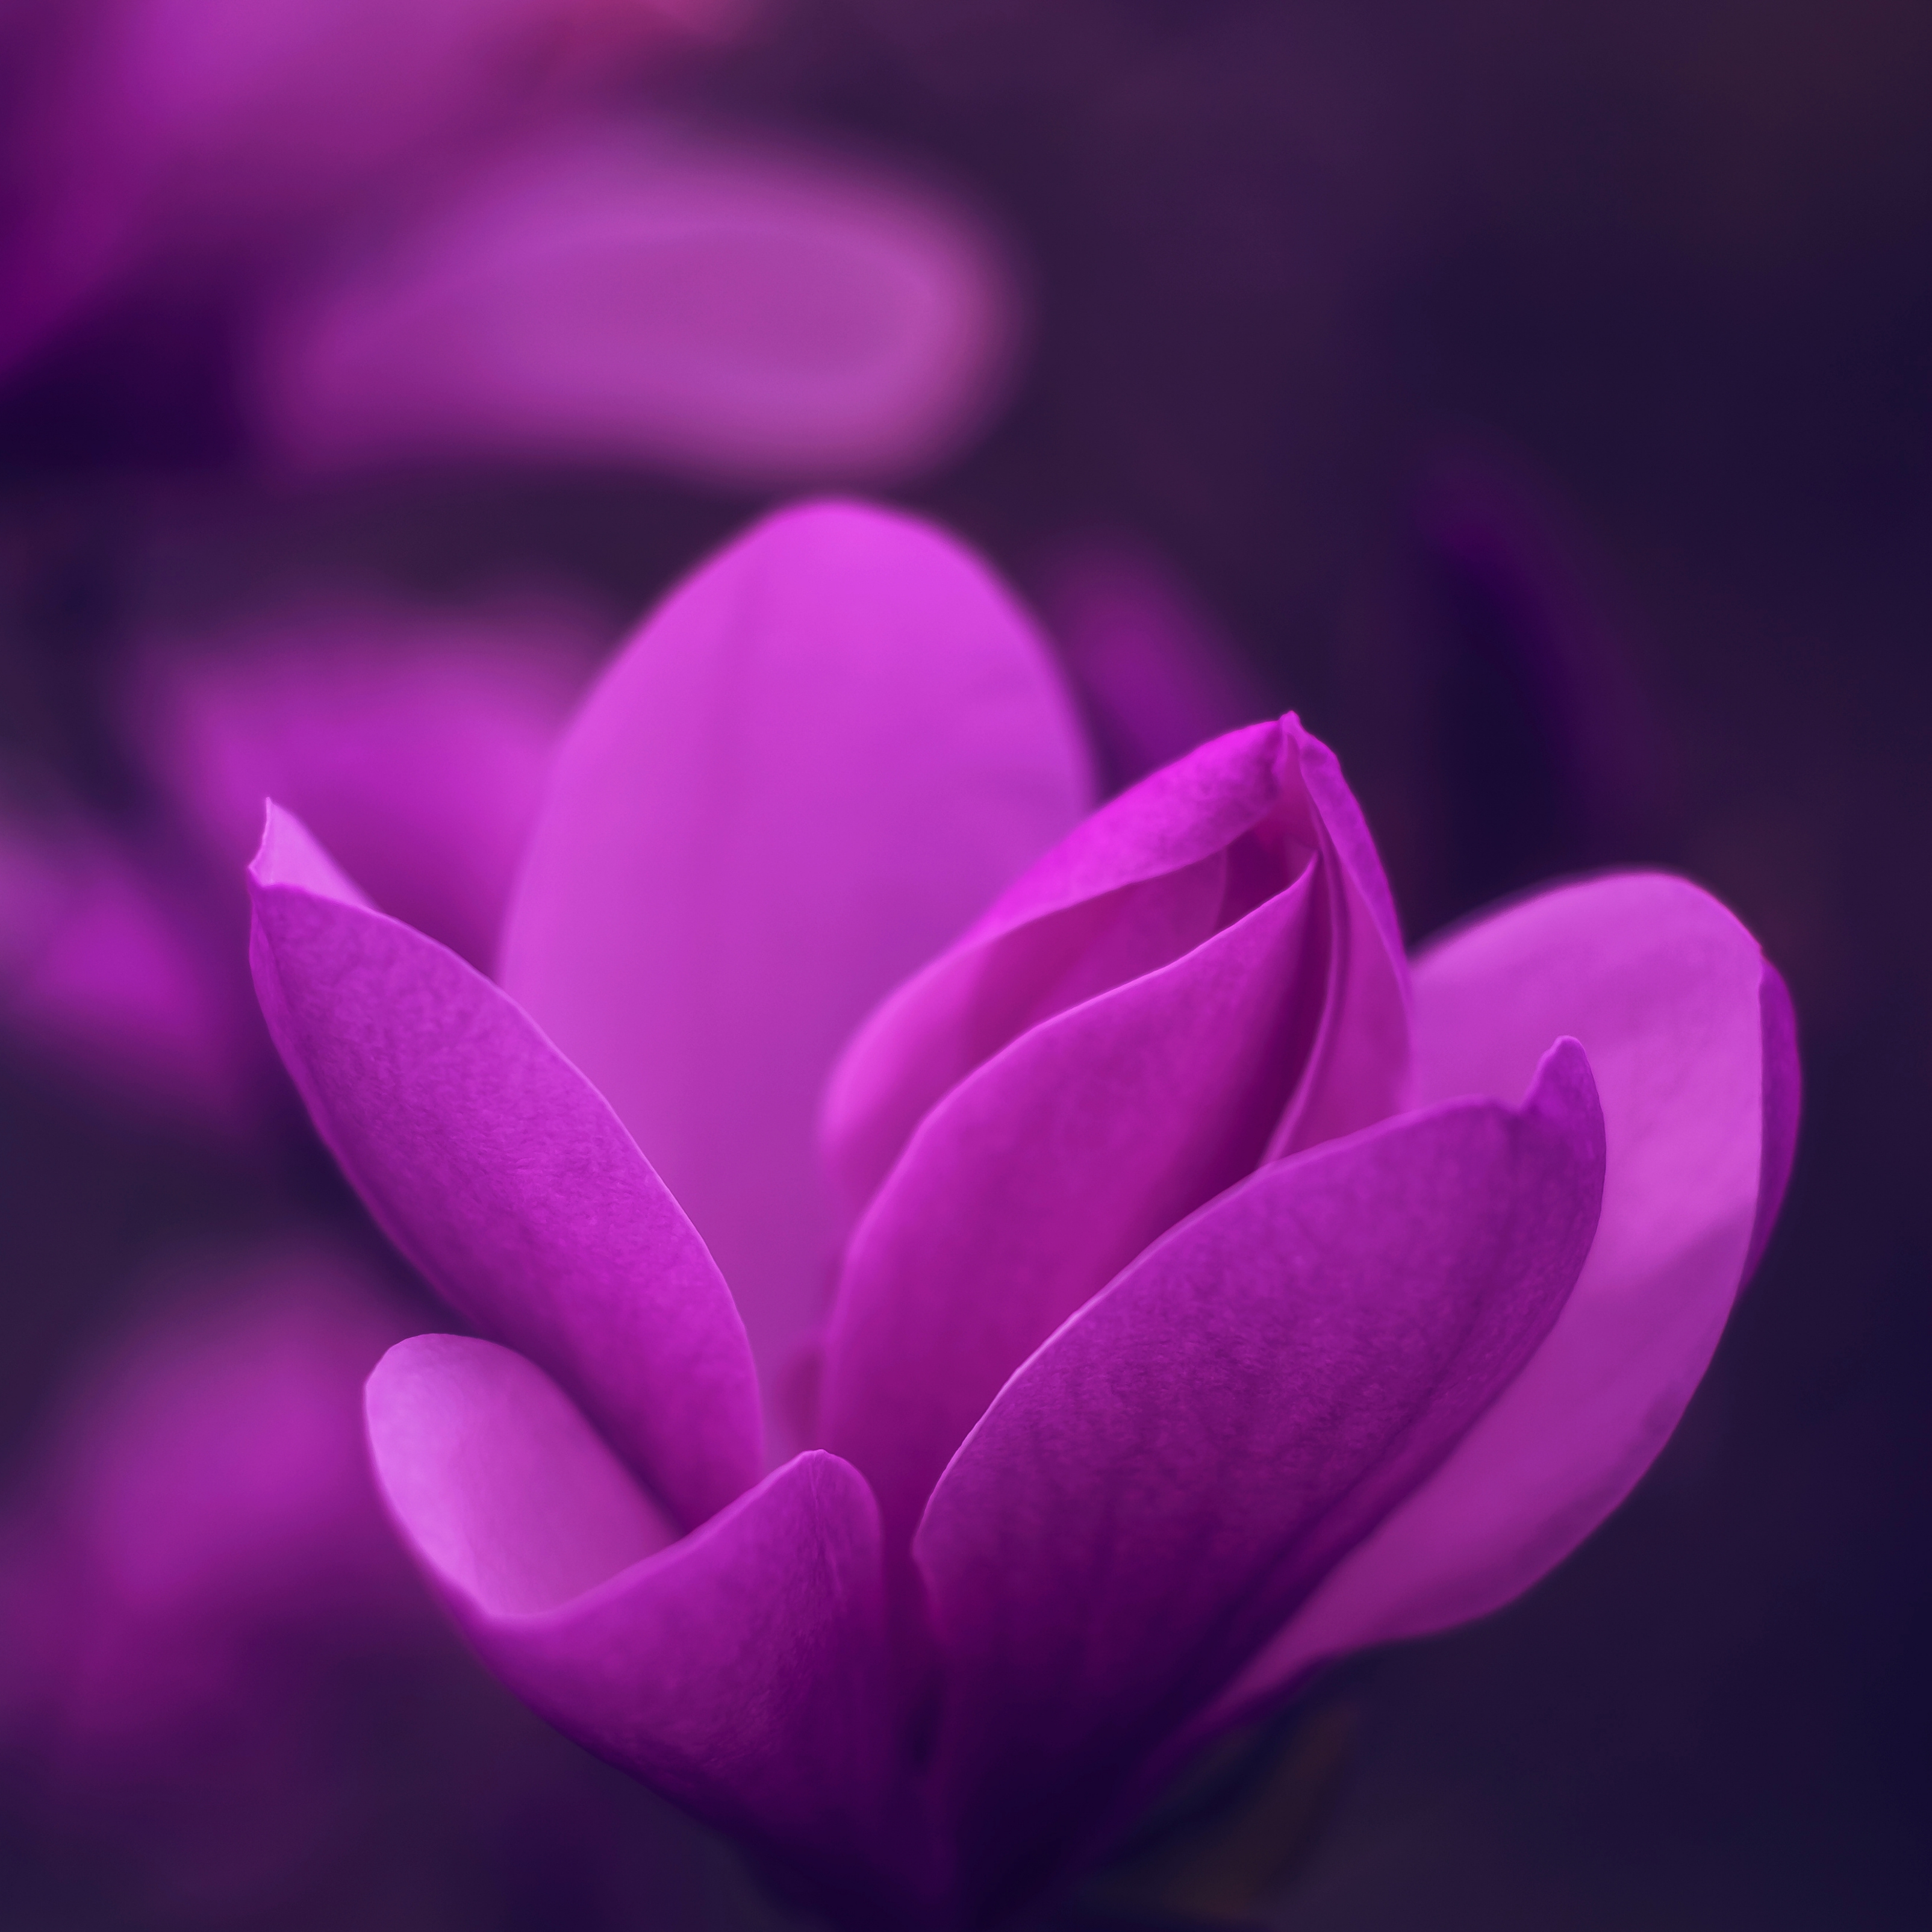 iPad Wallpapers Purple Bloom Blossom Petaled Flower iPad Wallpaper 3208x3208 px